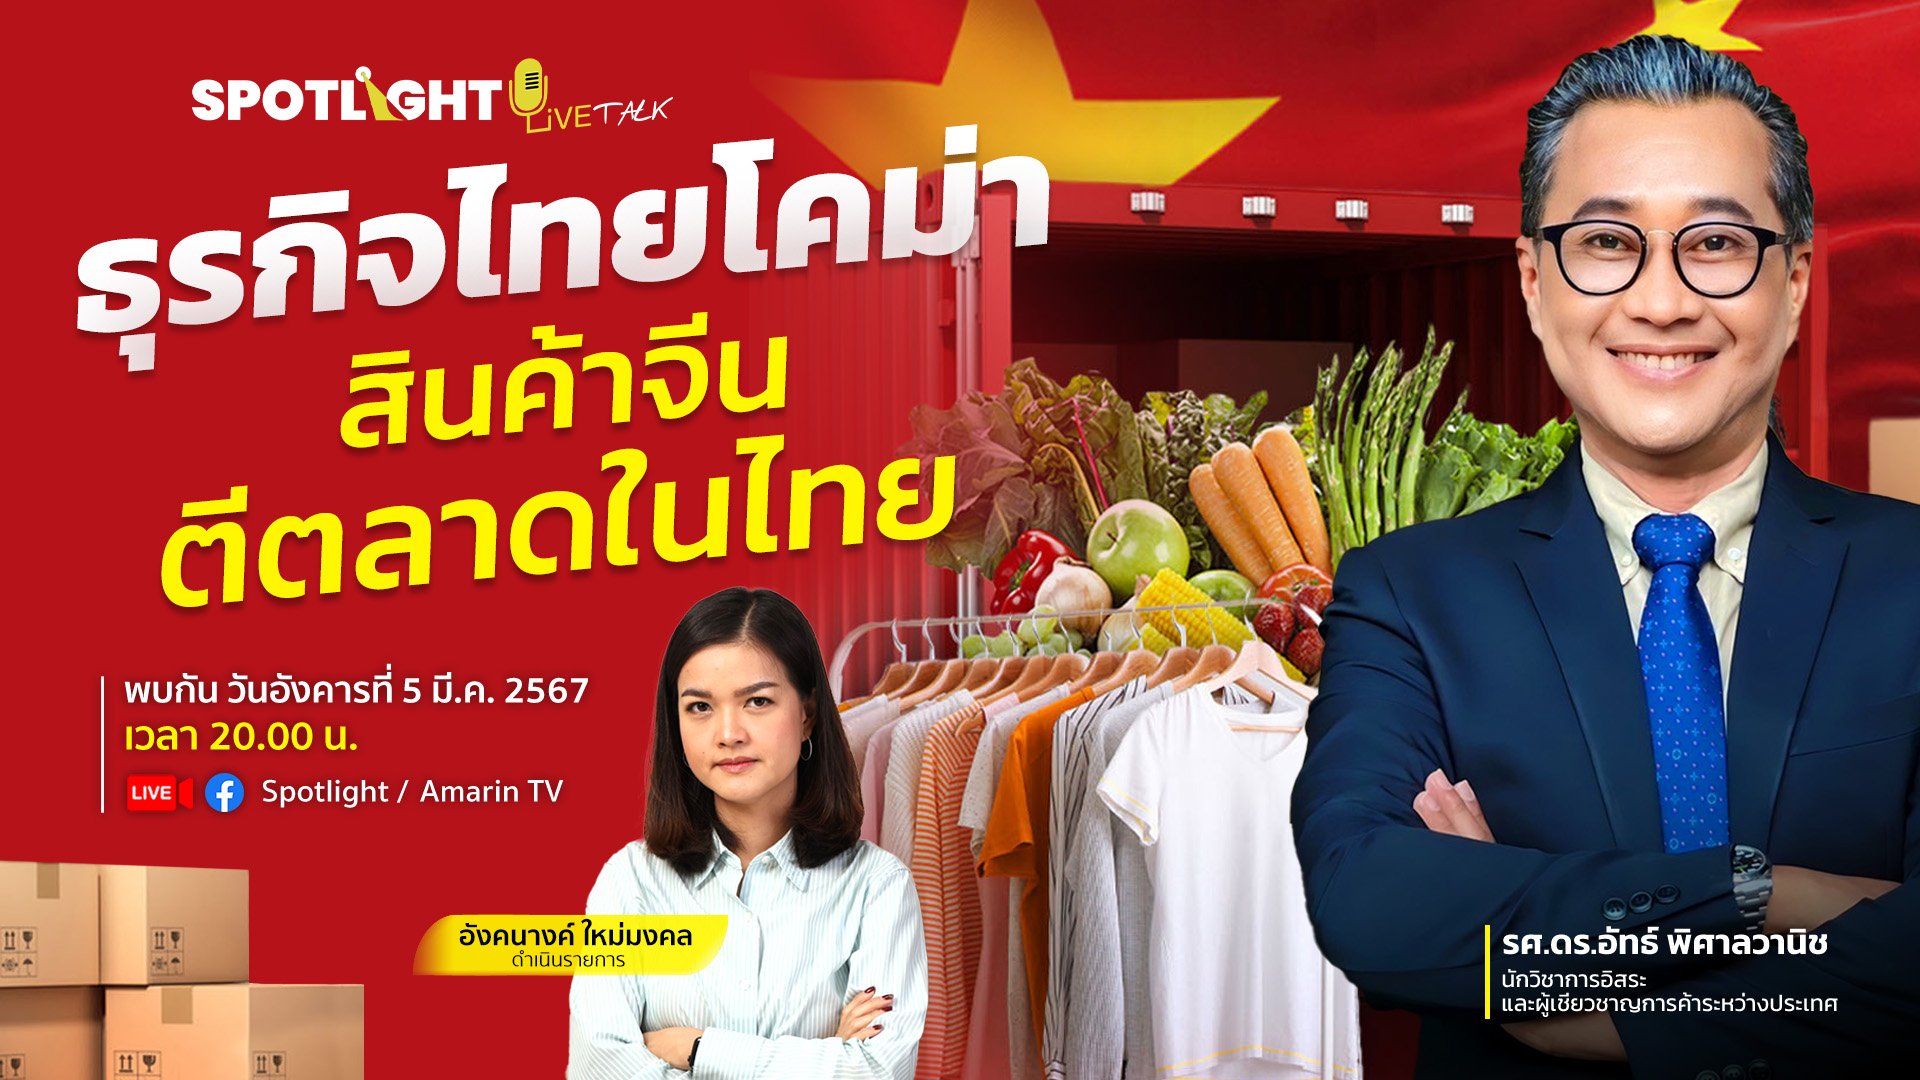 ธุรกิจไทยโคม่า...สินค้าจีนตีตลาดในไทย | Spotlight | 6 มี.ค. 67 | AMARIN TVHD34